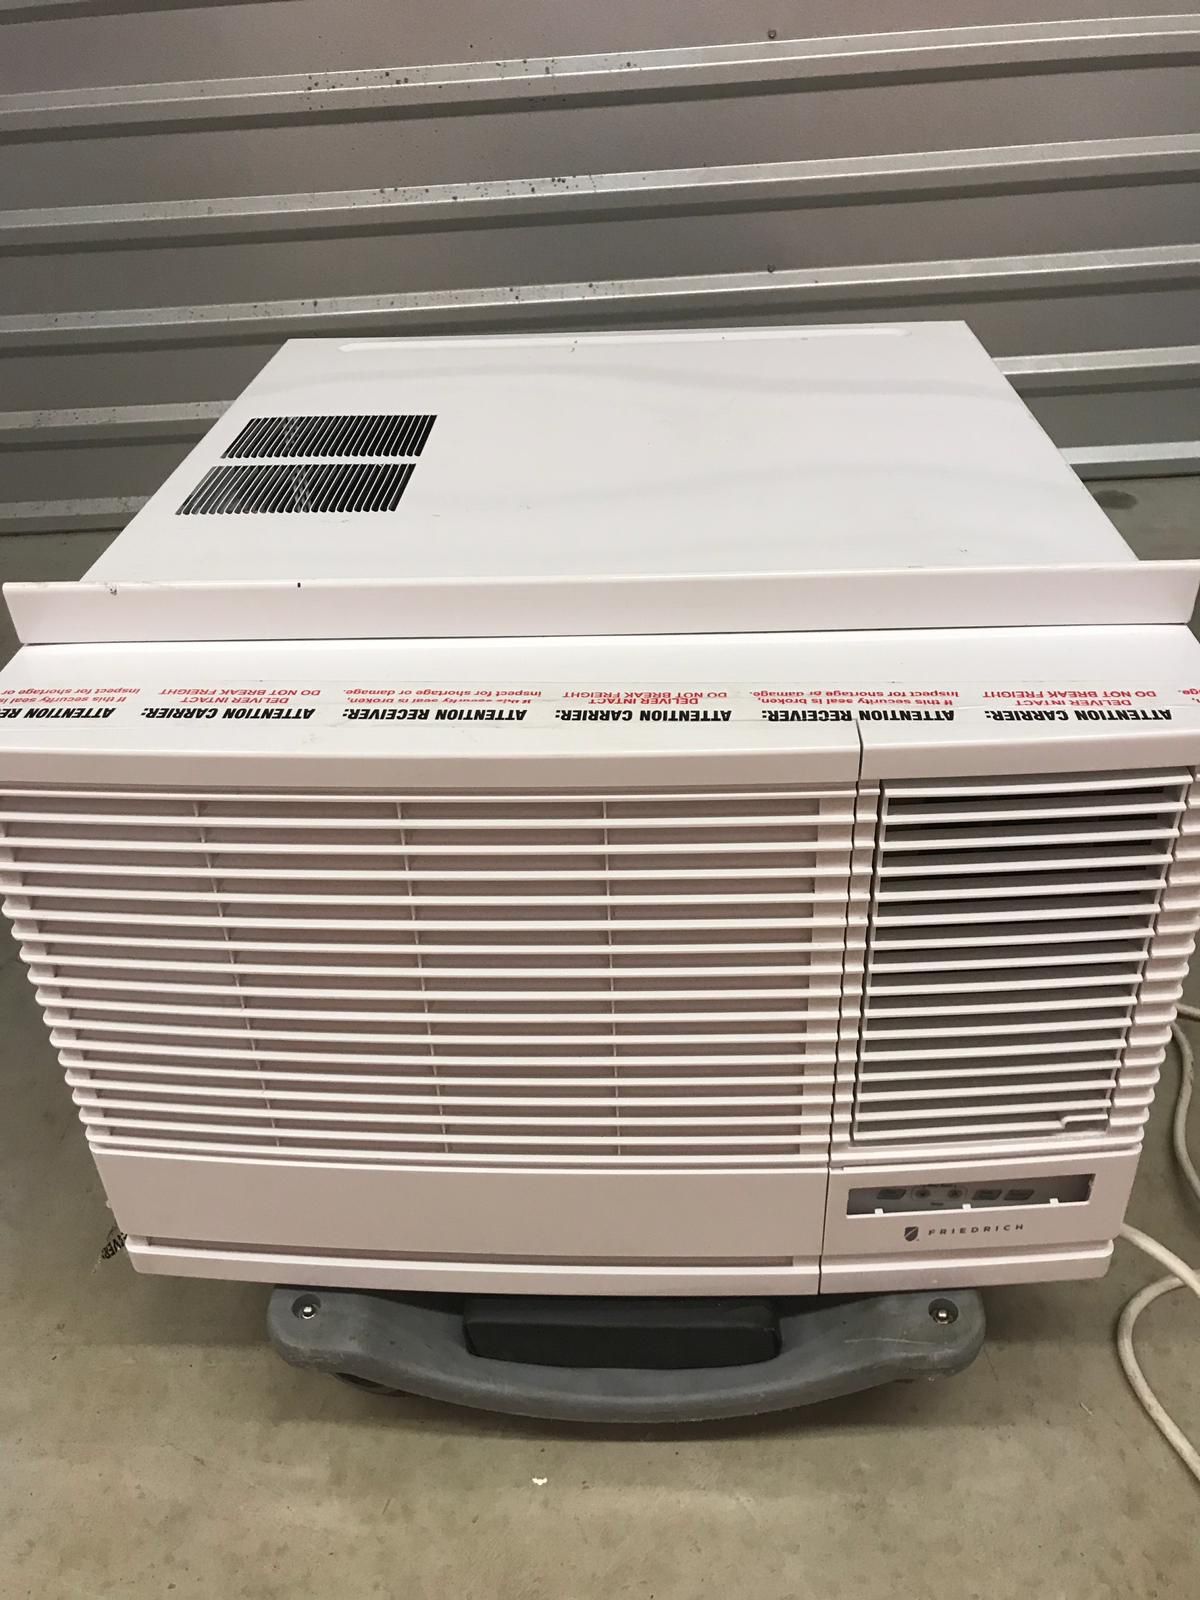 Friedrich AC air conditioner 23,500 BTU window/wall unit